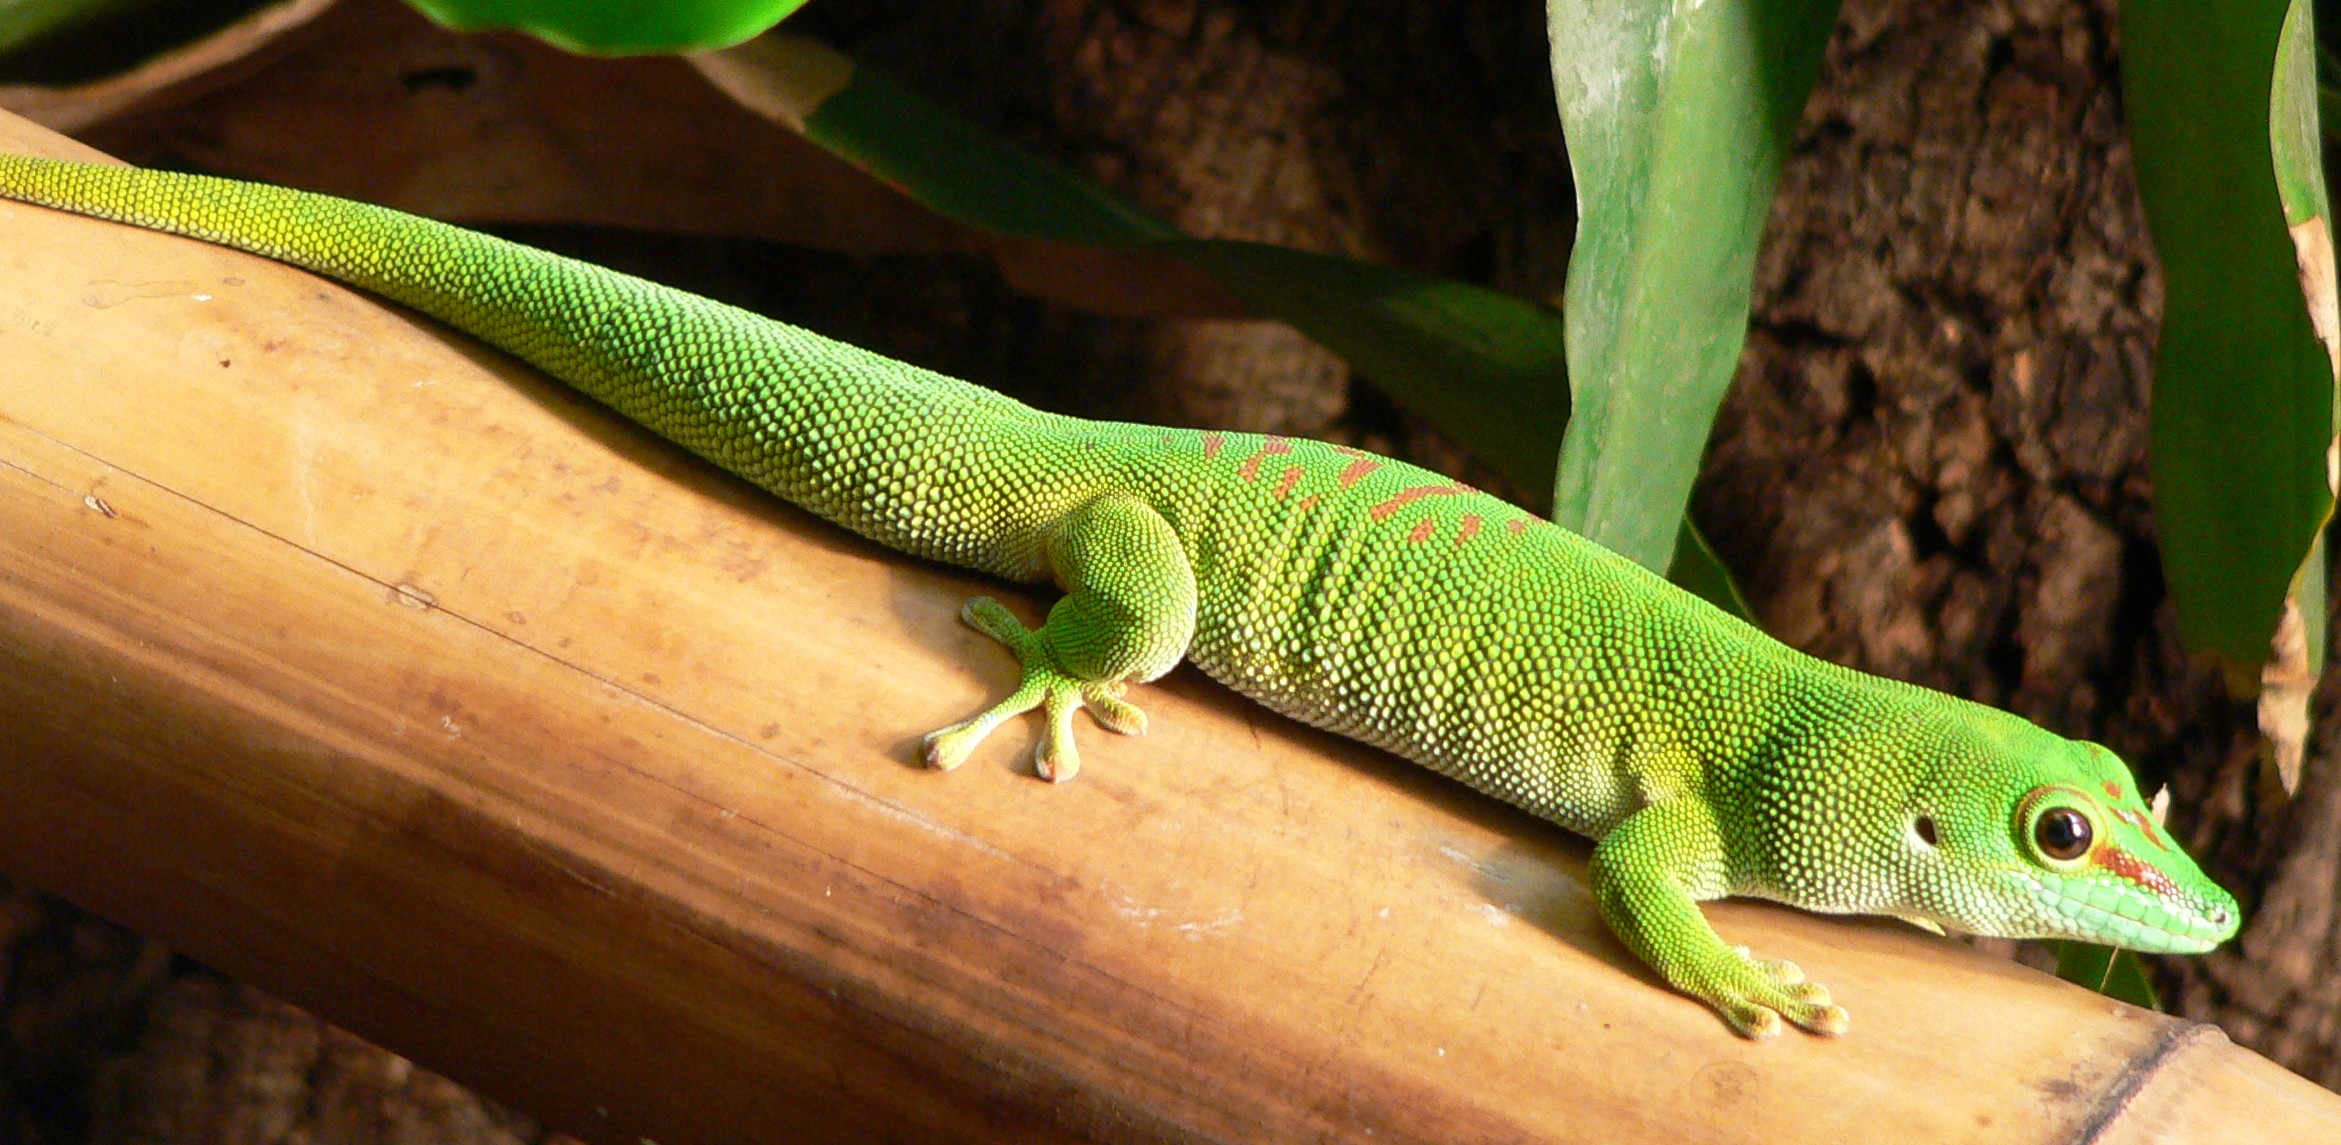 madagascar giant day gecko lifespan